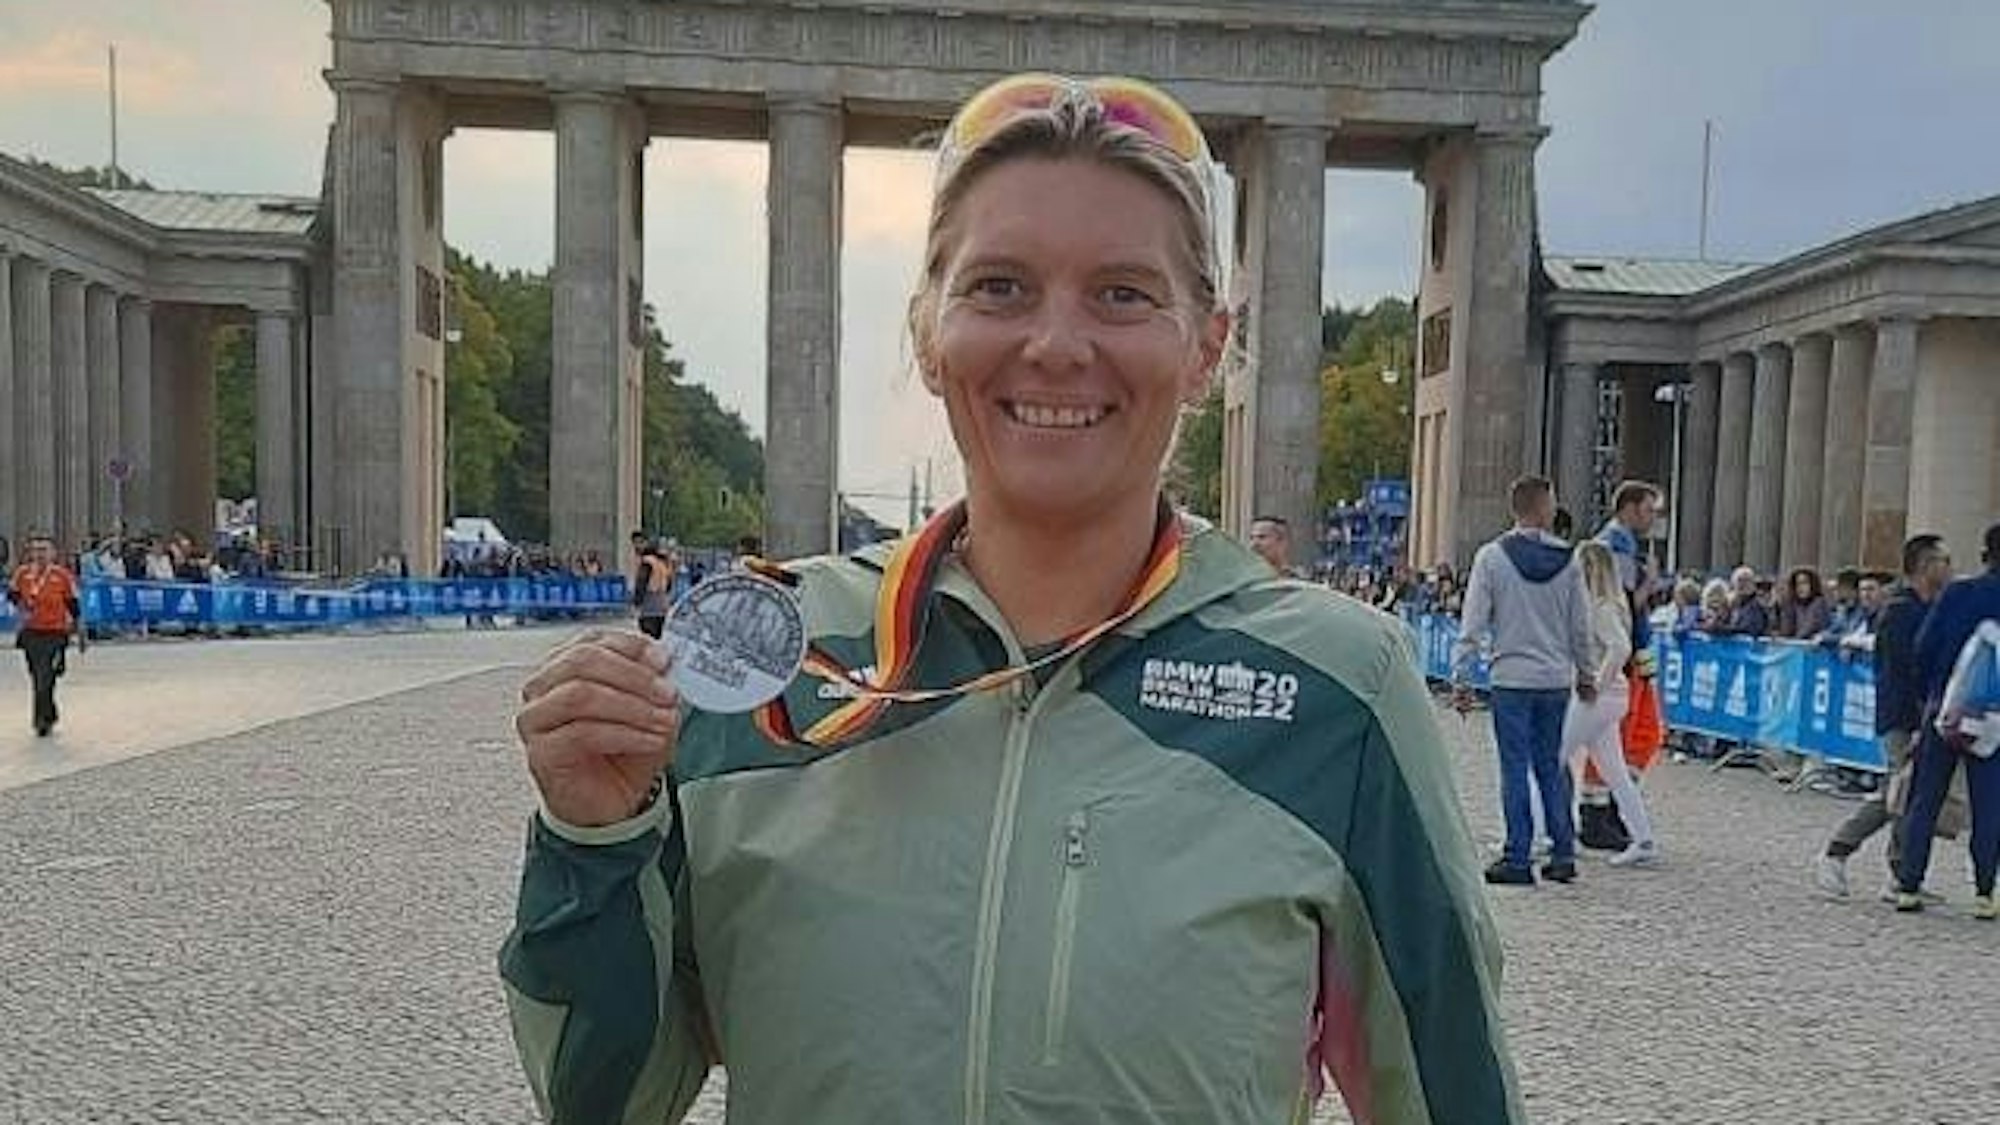 Ilona Schaffrath präsentiert vor dem Brandenburger Tor ihre Medaille des Berlin-Marathons.